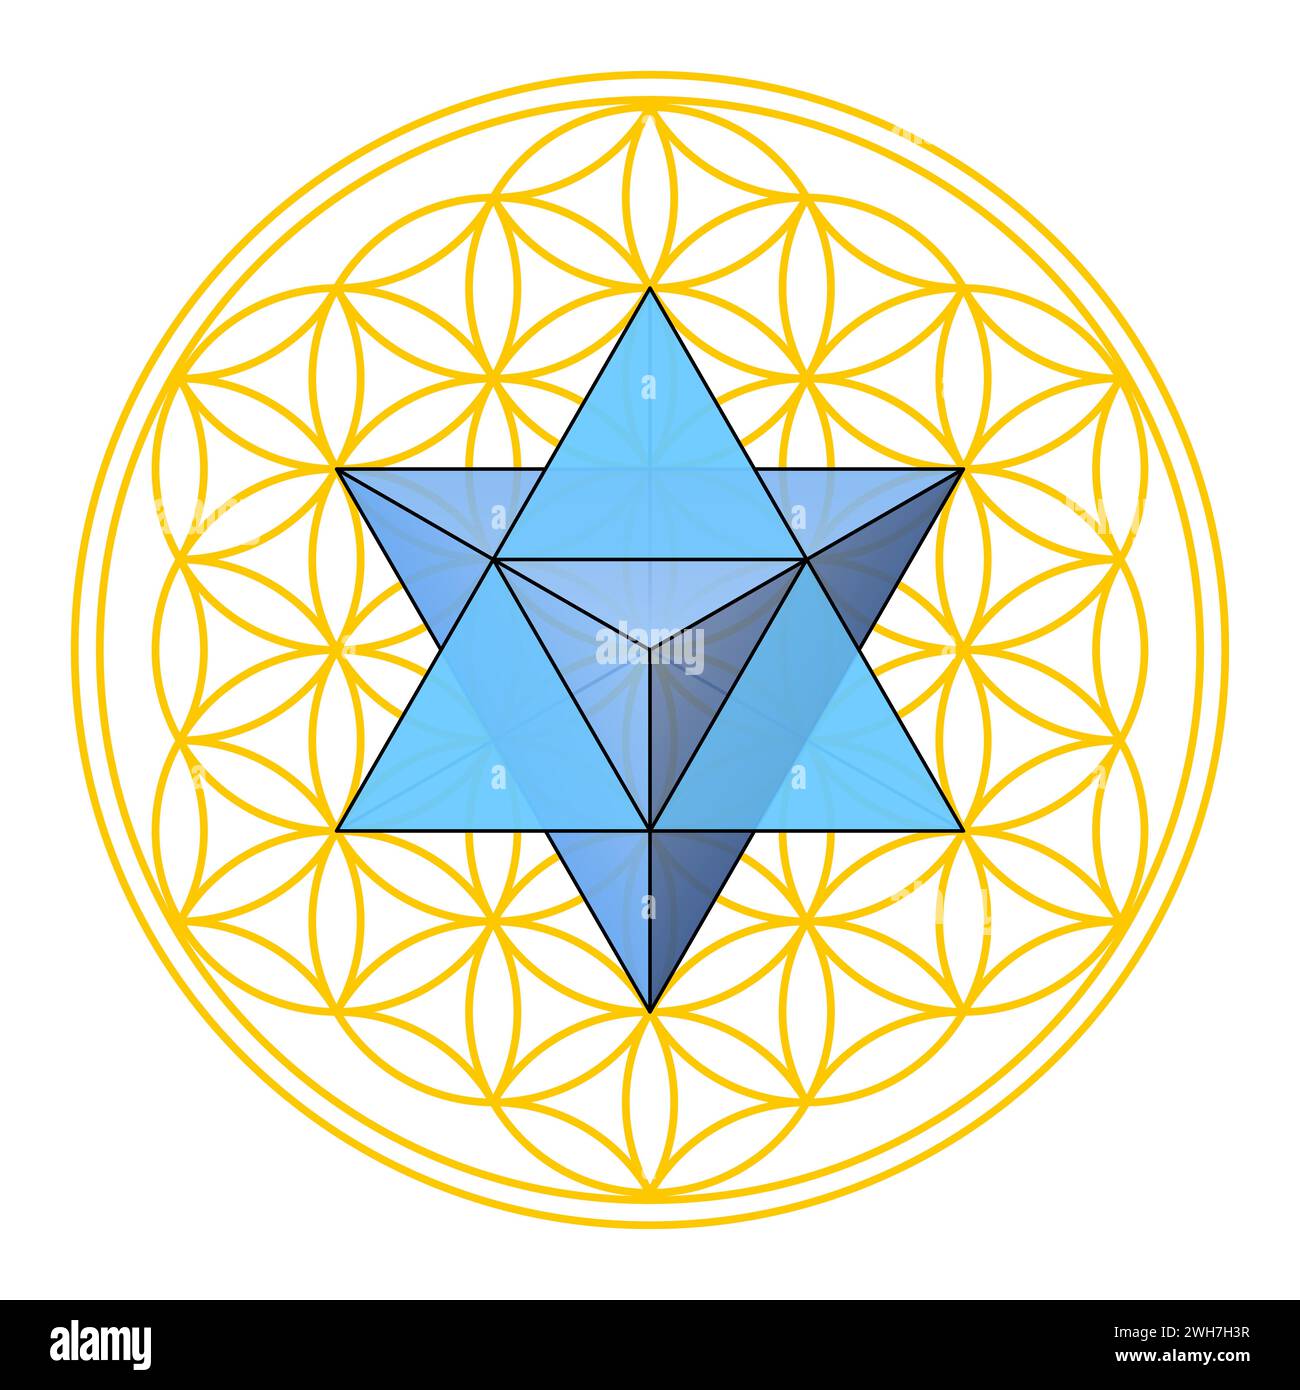 Fiore della vita con Merkaba, geometria Sacra. Tetraedro stellare, un tetraedro doppio, posizionato al centro della figura geometrica. Foto Stock